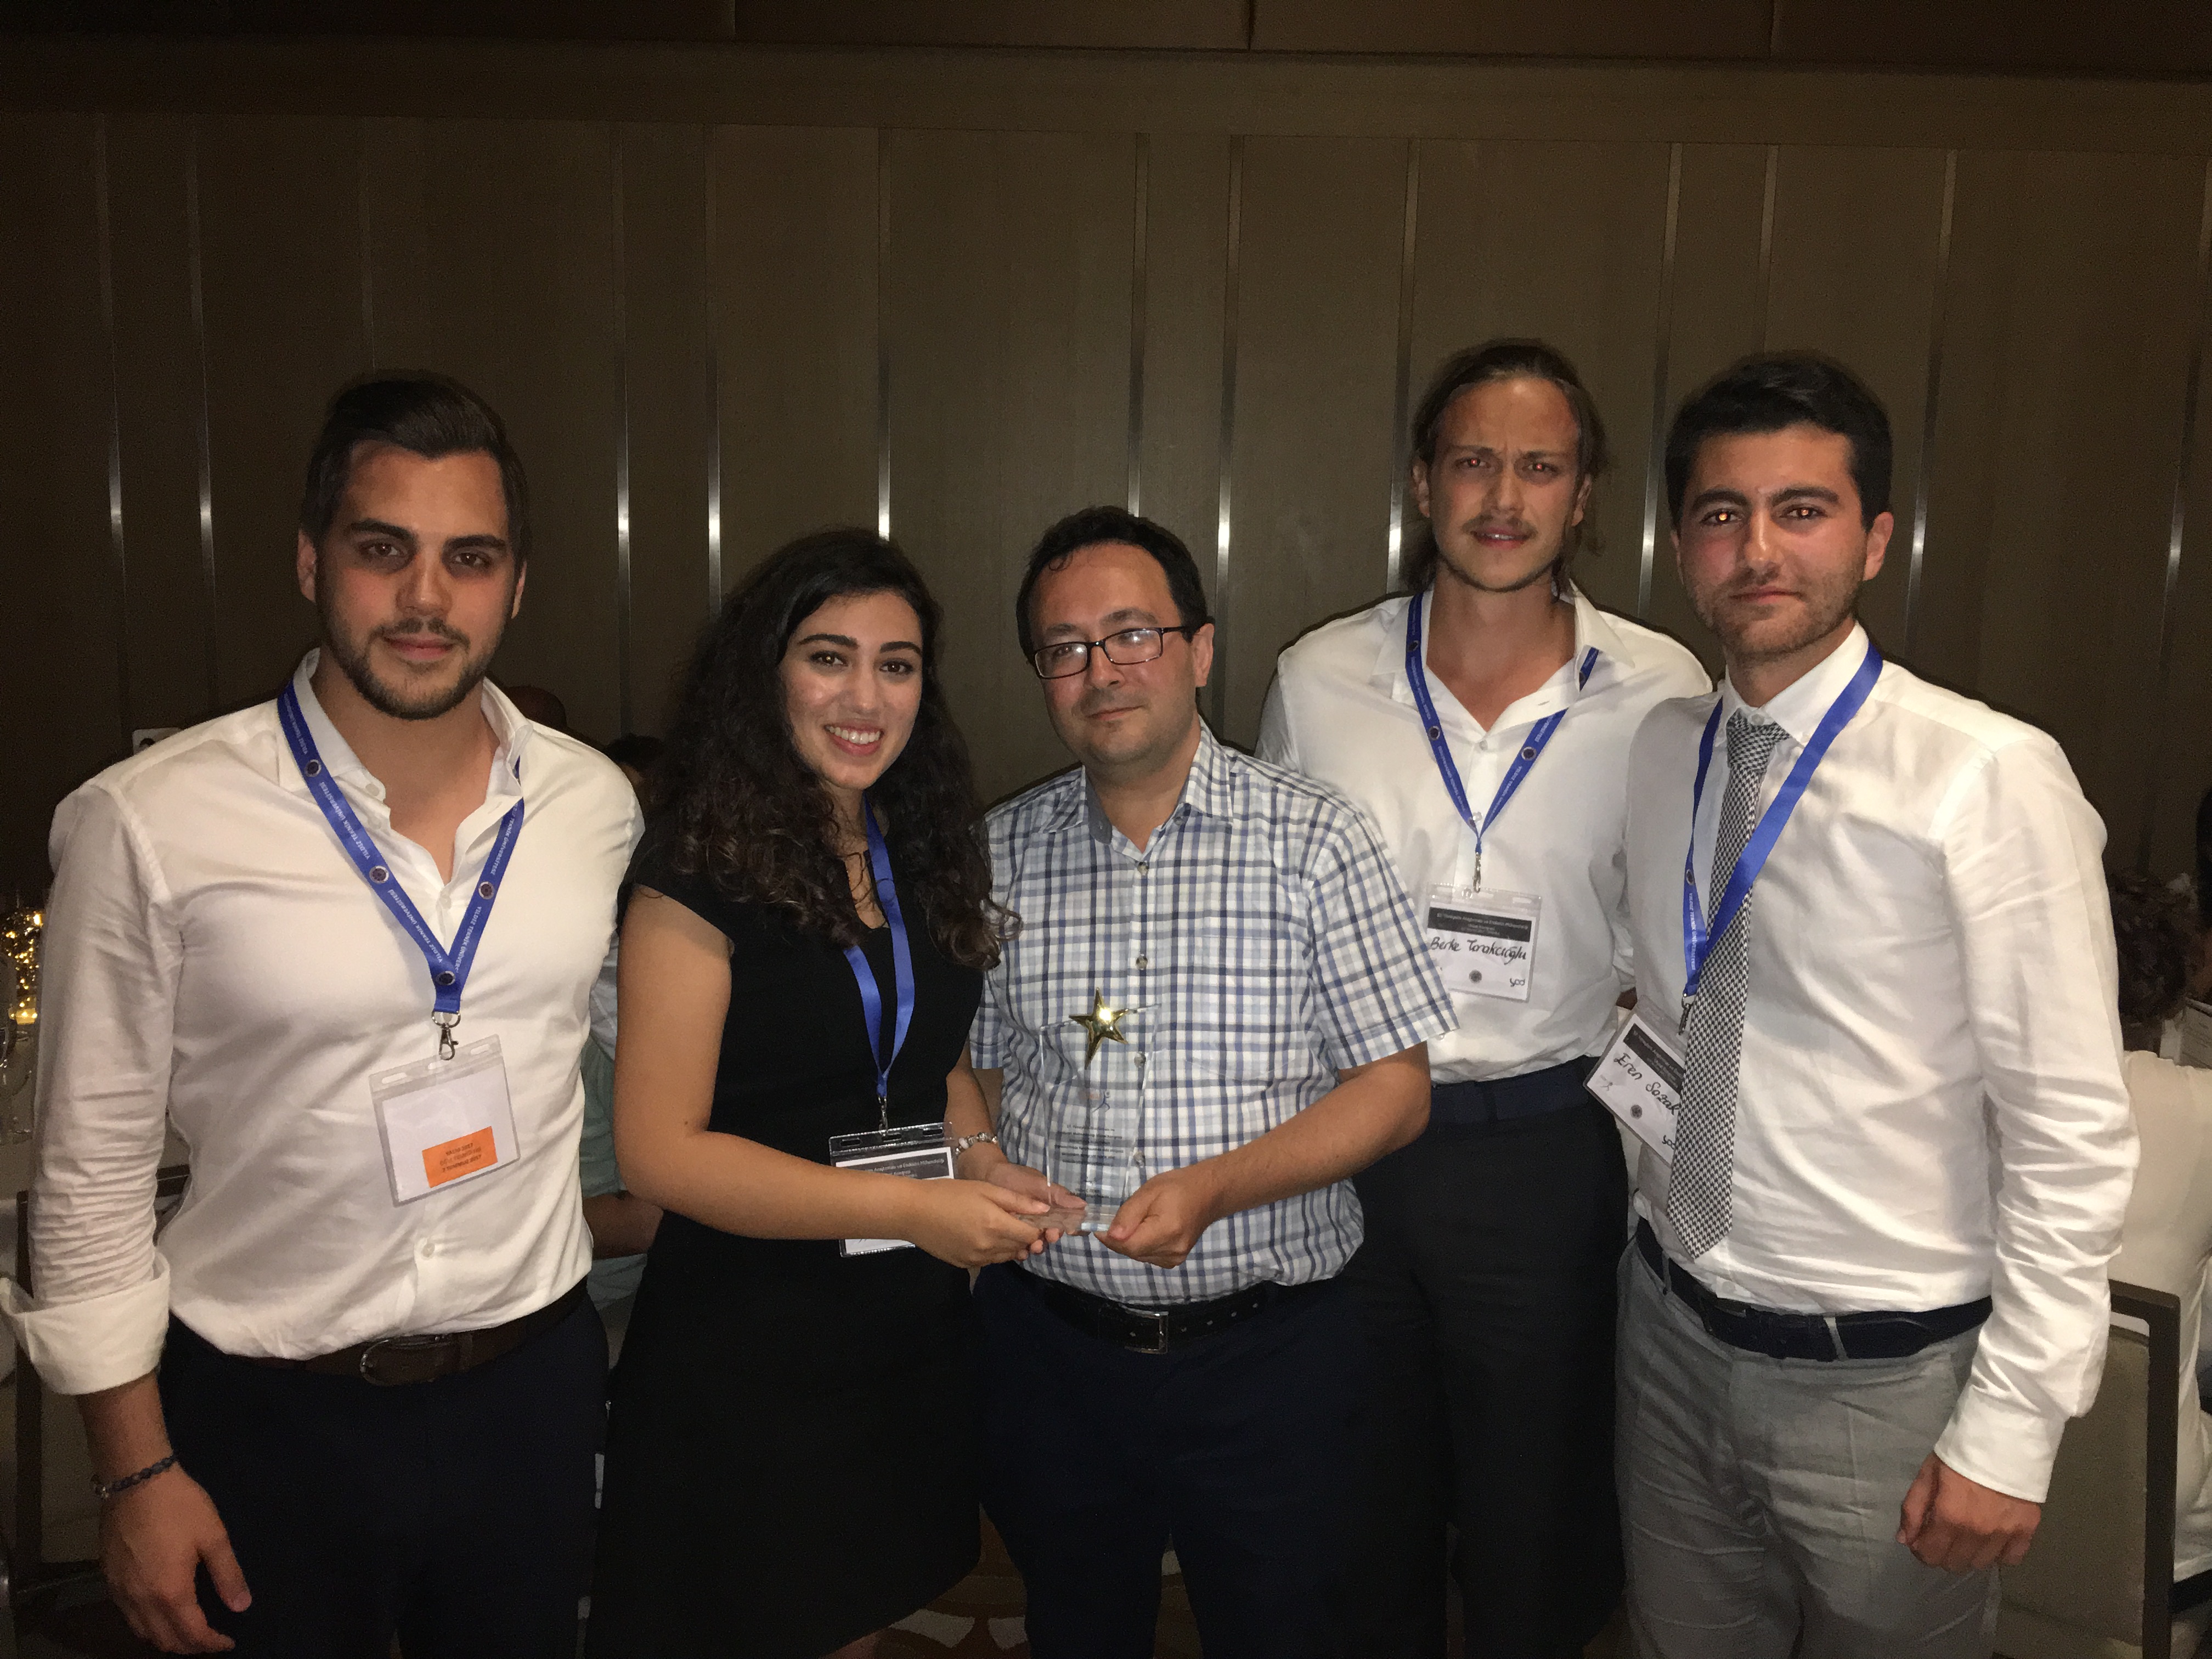 TOBB ETÜ Öğrencileri, 2017 Yöneylem Araştırmaları ve Endüstri Mühendisliği Yarışmasını Kazandı